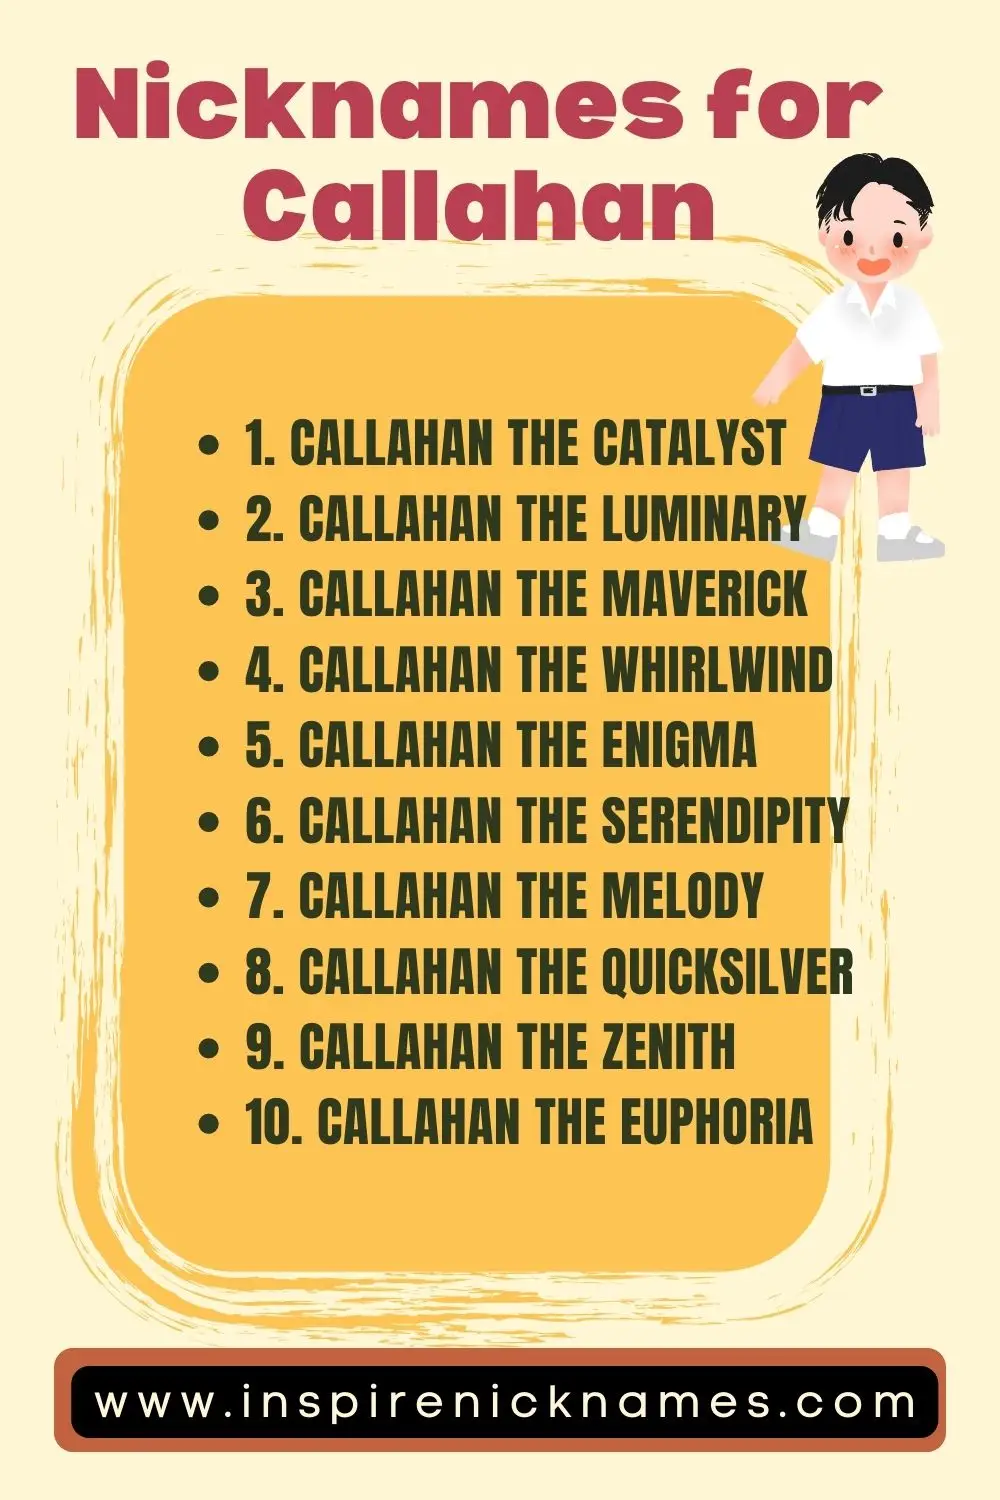 nicknames for Callahan list ideas